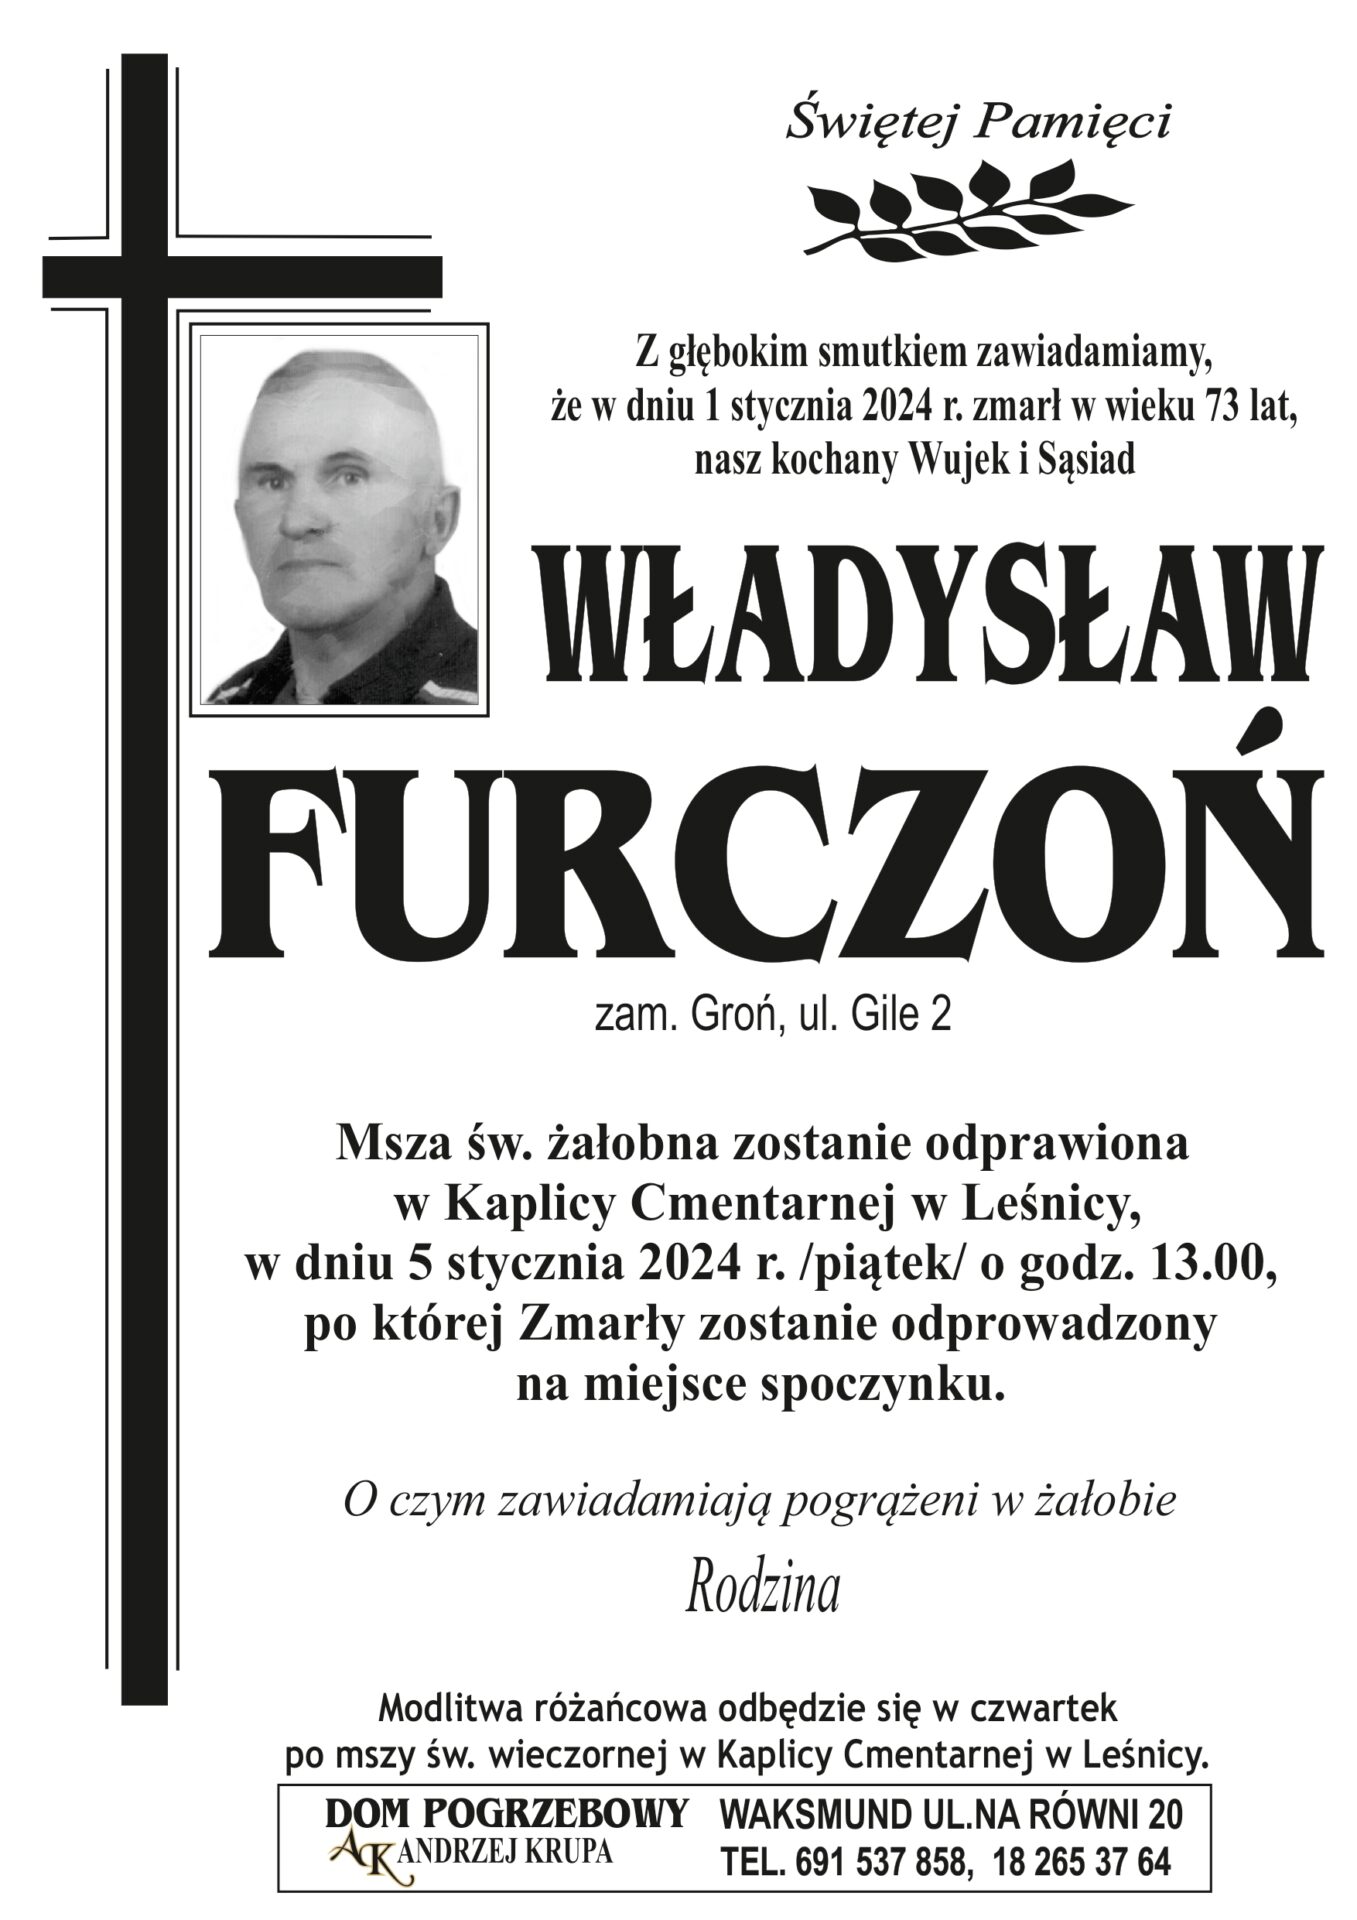 Władysław Furczoń